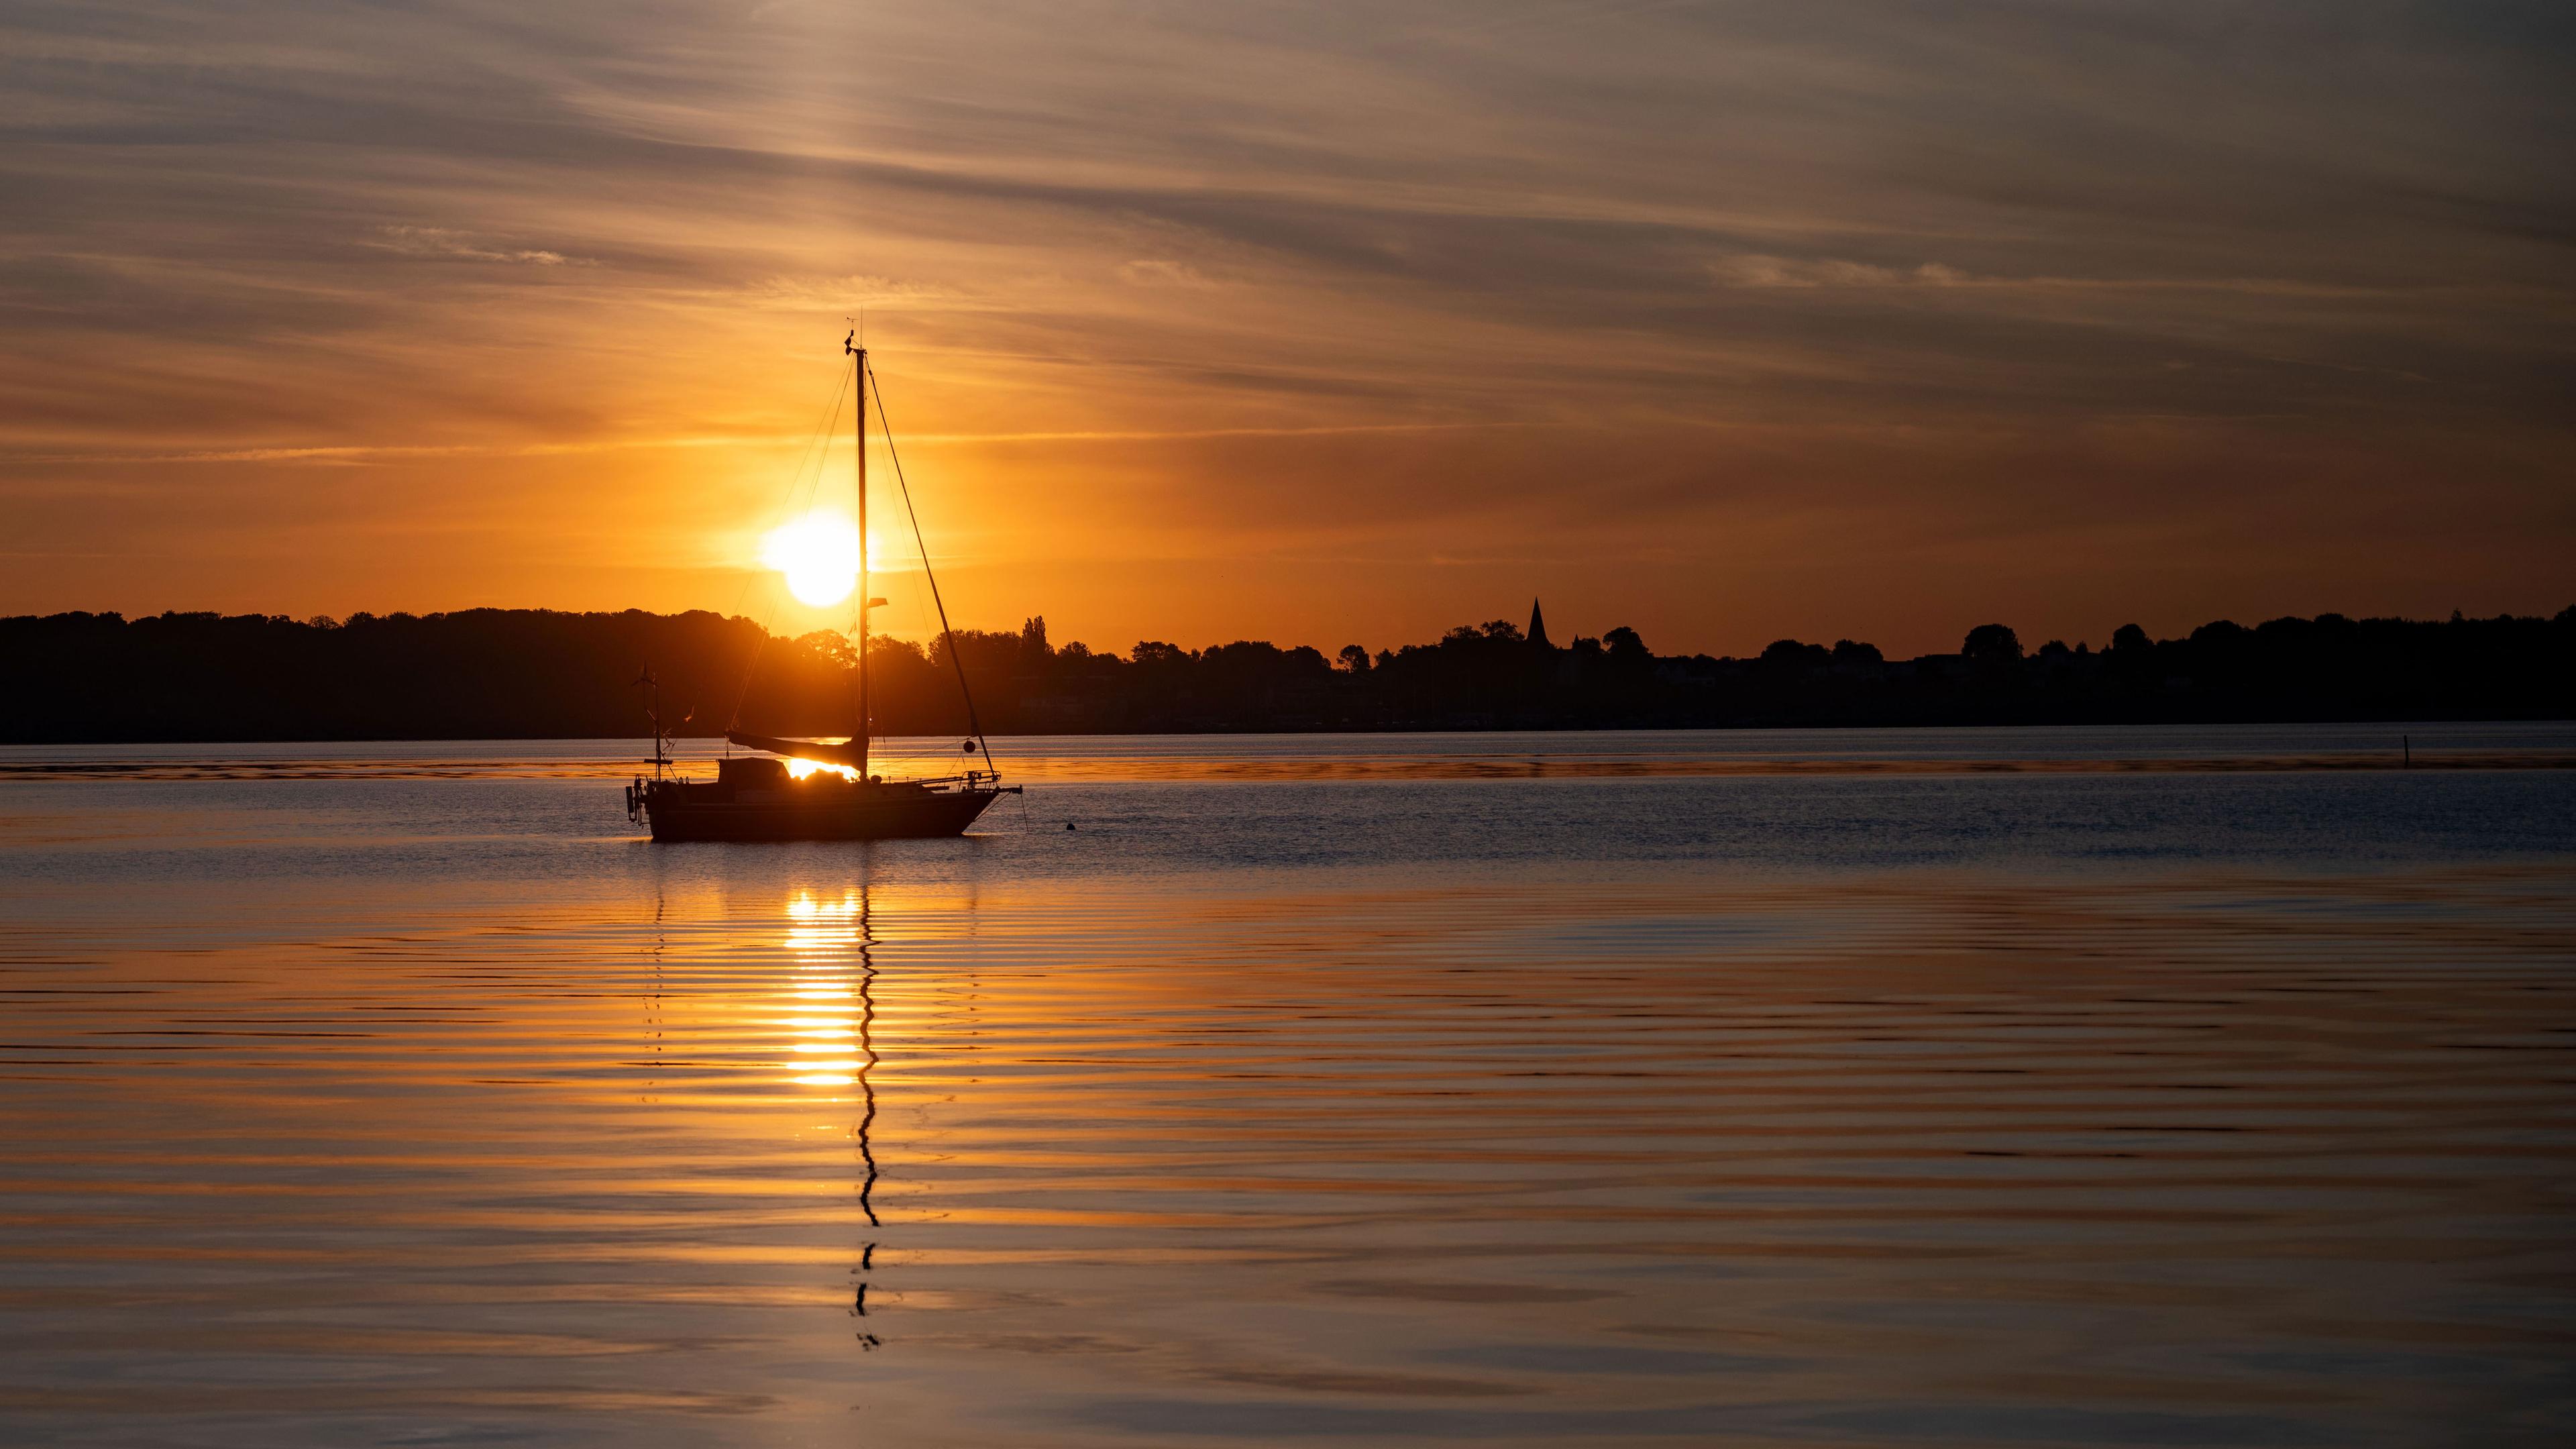 Ein kleines Segelboot auf dem Wasser bei Sonnenuntergang